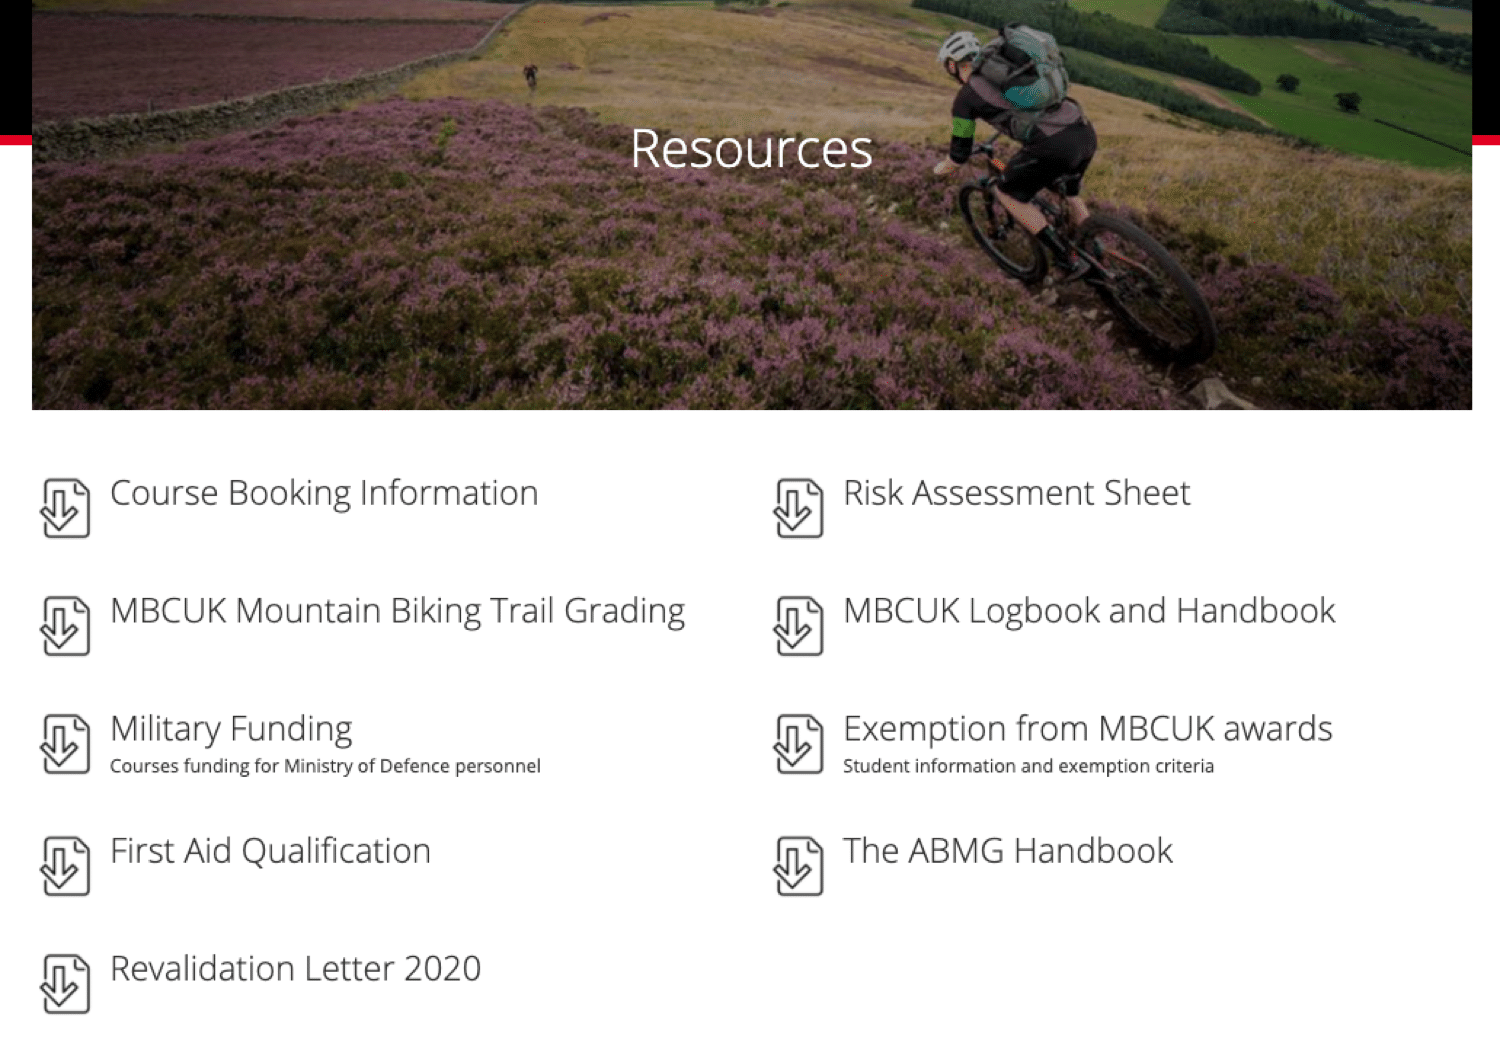 Een voorbeeld van een resource pagina over mountainbiking die we via deze operator konden vinden